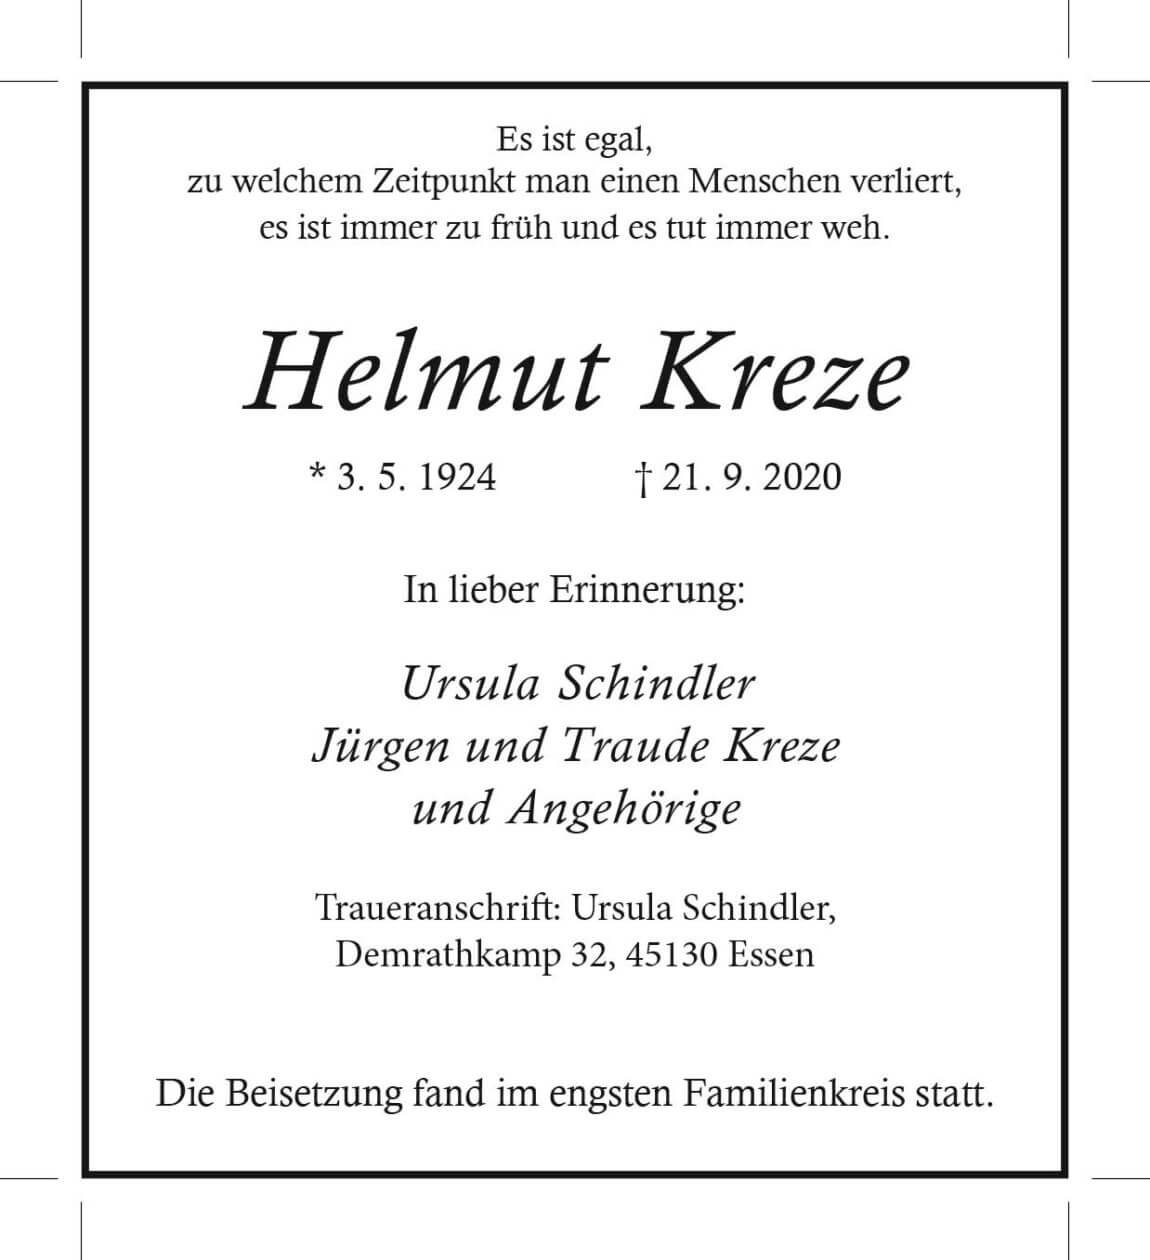 02.10.2020_Kreze-Helmut.jpg